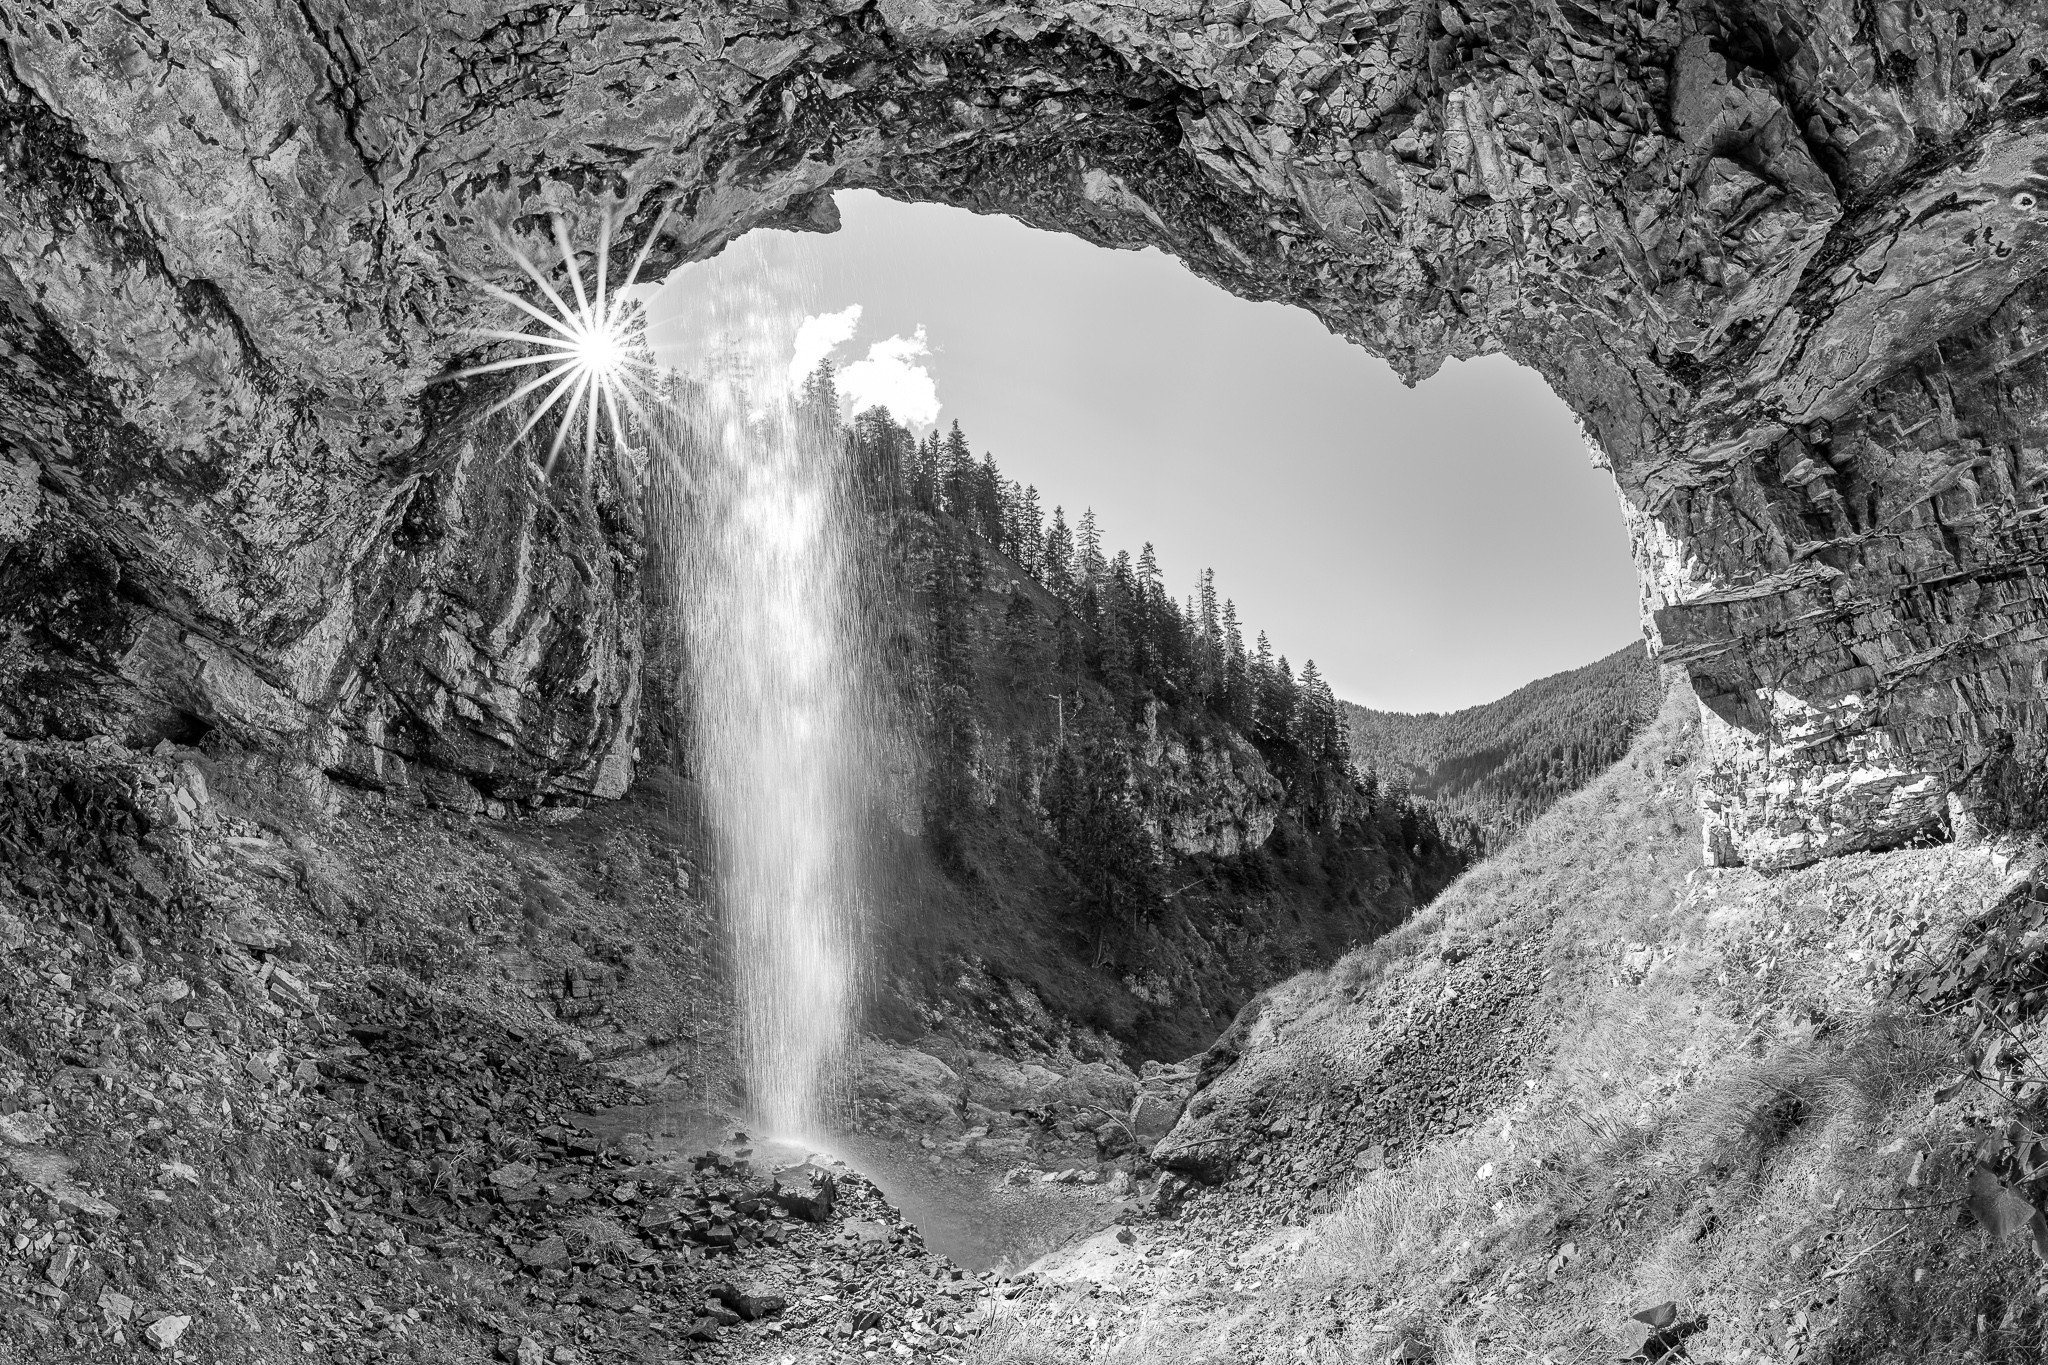 Wasserfall-Ausblick. Ausblick aus einer Höhle unter einem hohen Wasserfall im Karwendelgebirge. s-w